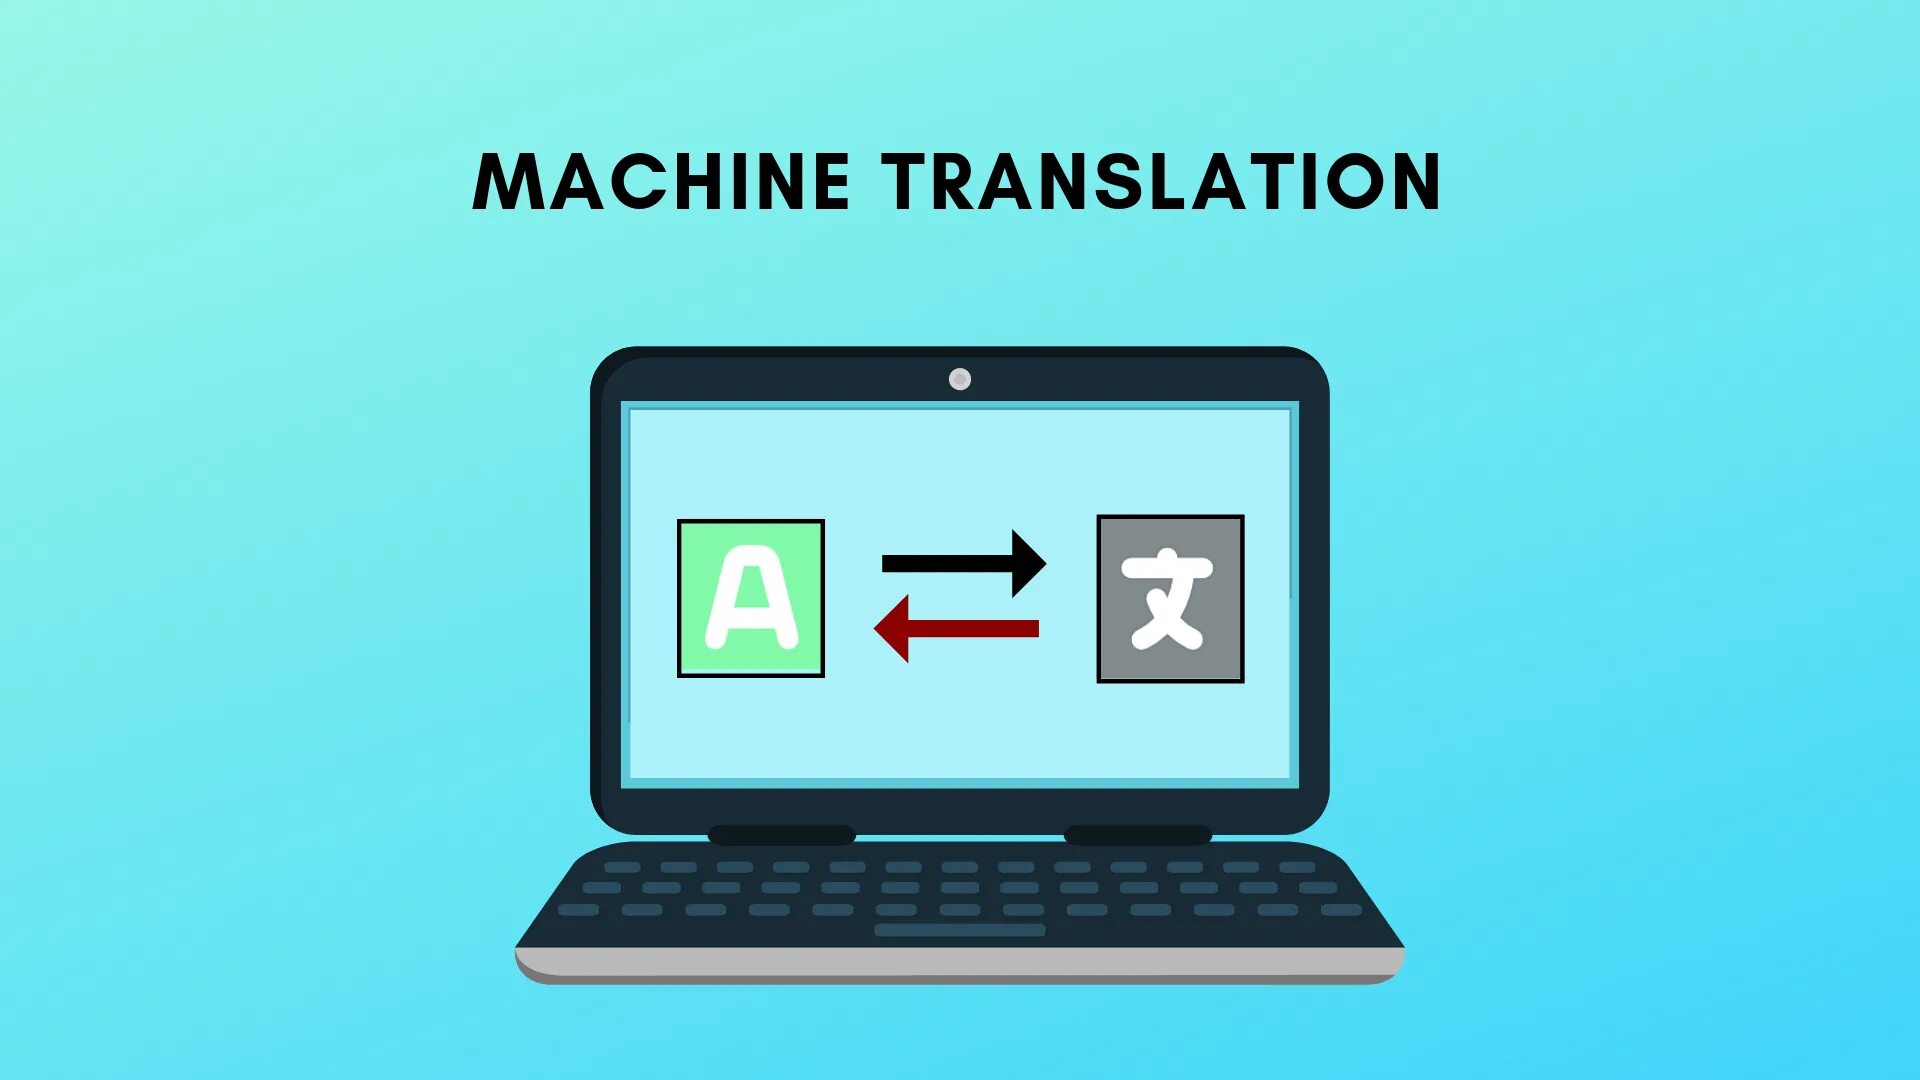 Machinery перевод. Машинный перевод. Machine translation. Системы машинного перевода. Компьютерные методы перевода.